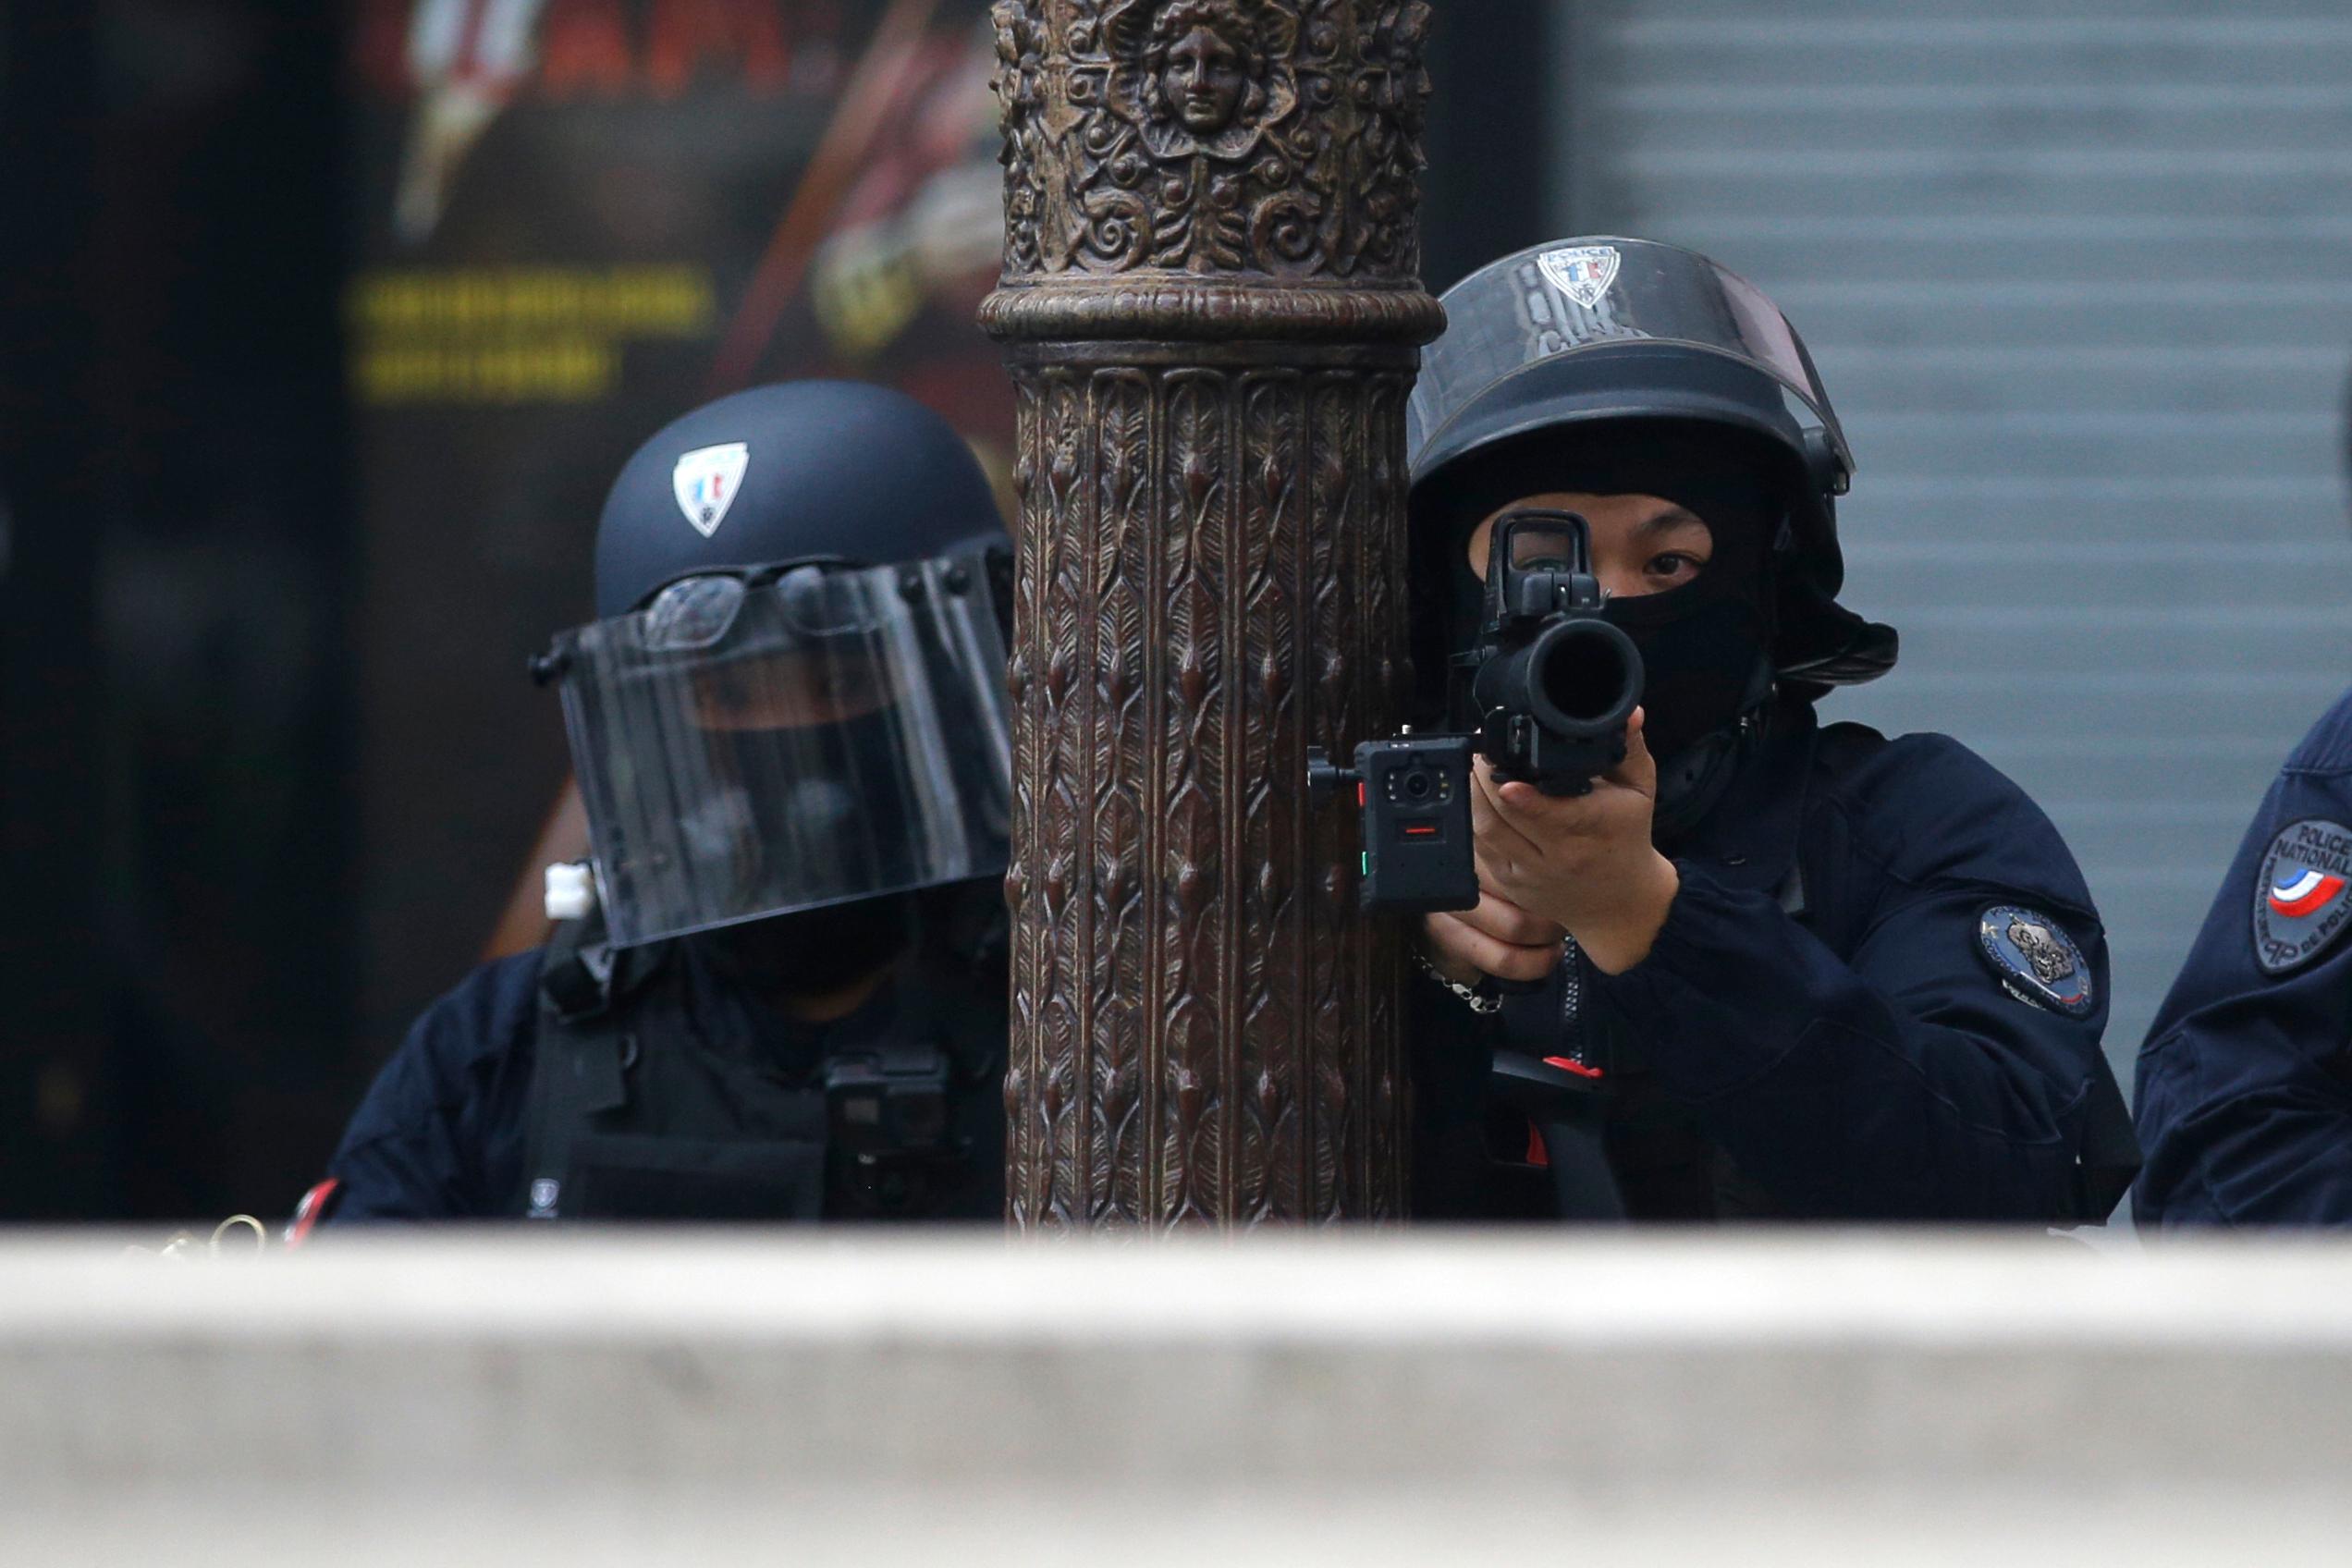 Hundratals poliser är inkopplade i jakten på en förrymd fånge och dennes medbrottslingar. Bilden är en arkivbild på fransk polis. Foto: Christophe Ena/AP/TT